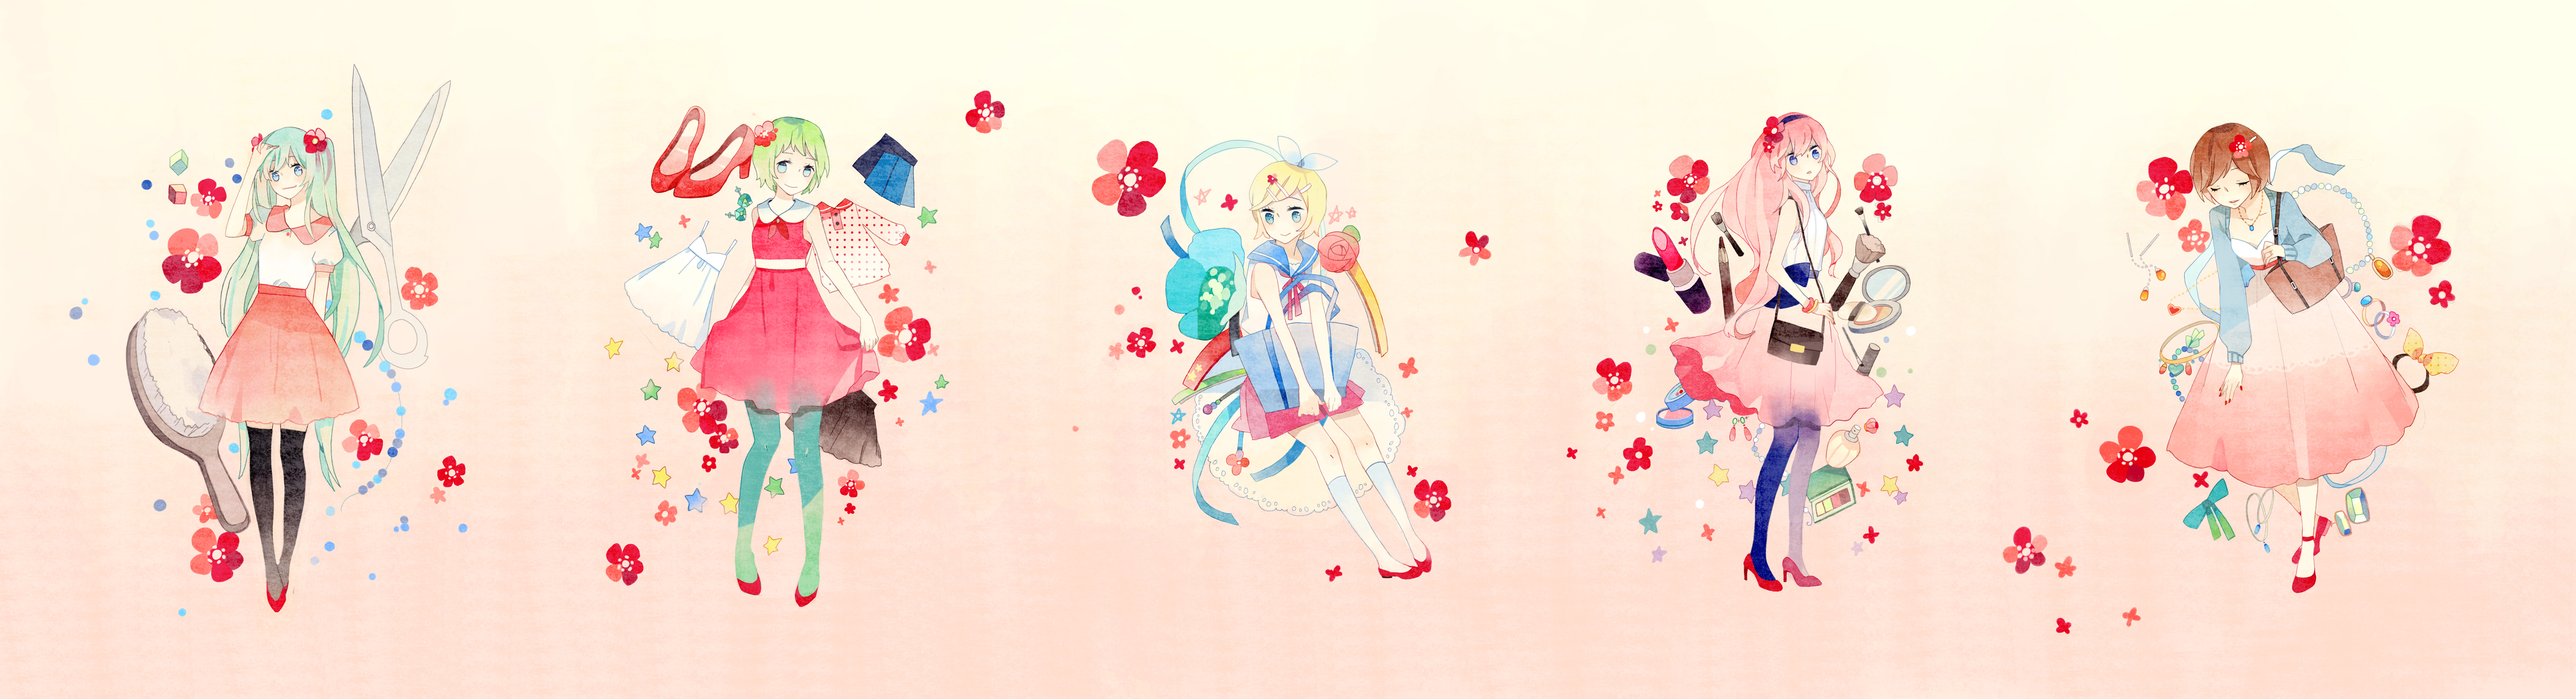 Descarga gratuita de fondo de pantalla para móvil de Vocaloid, Luka Megurine, Animado, Hatsune Miku, Rin Kagamine, Gumi (Vocaloid), Meiko (Vocaloid).